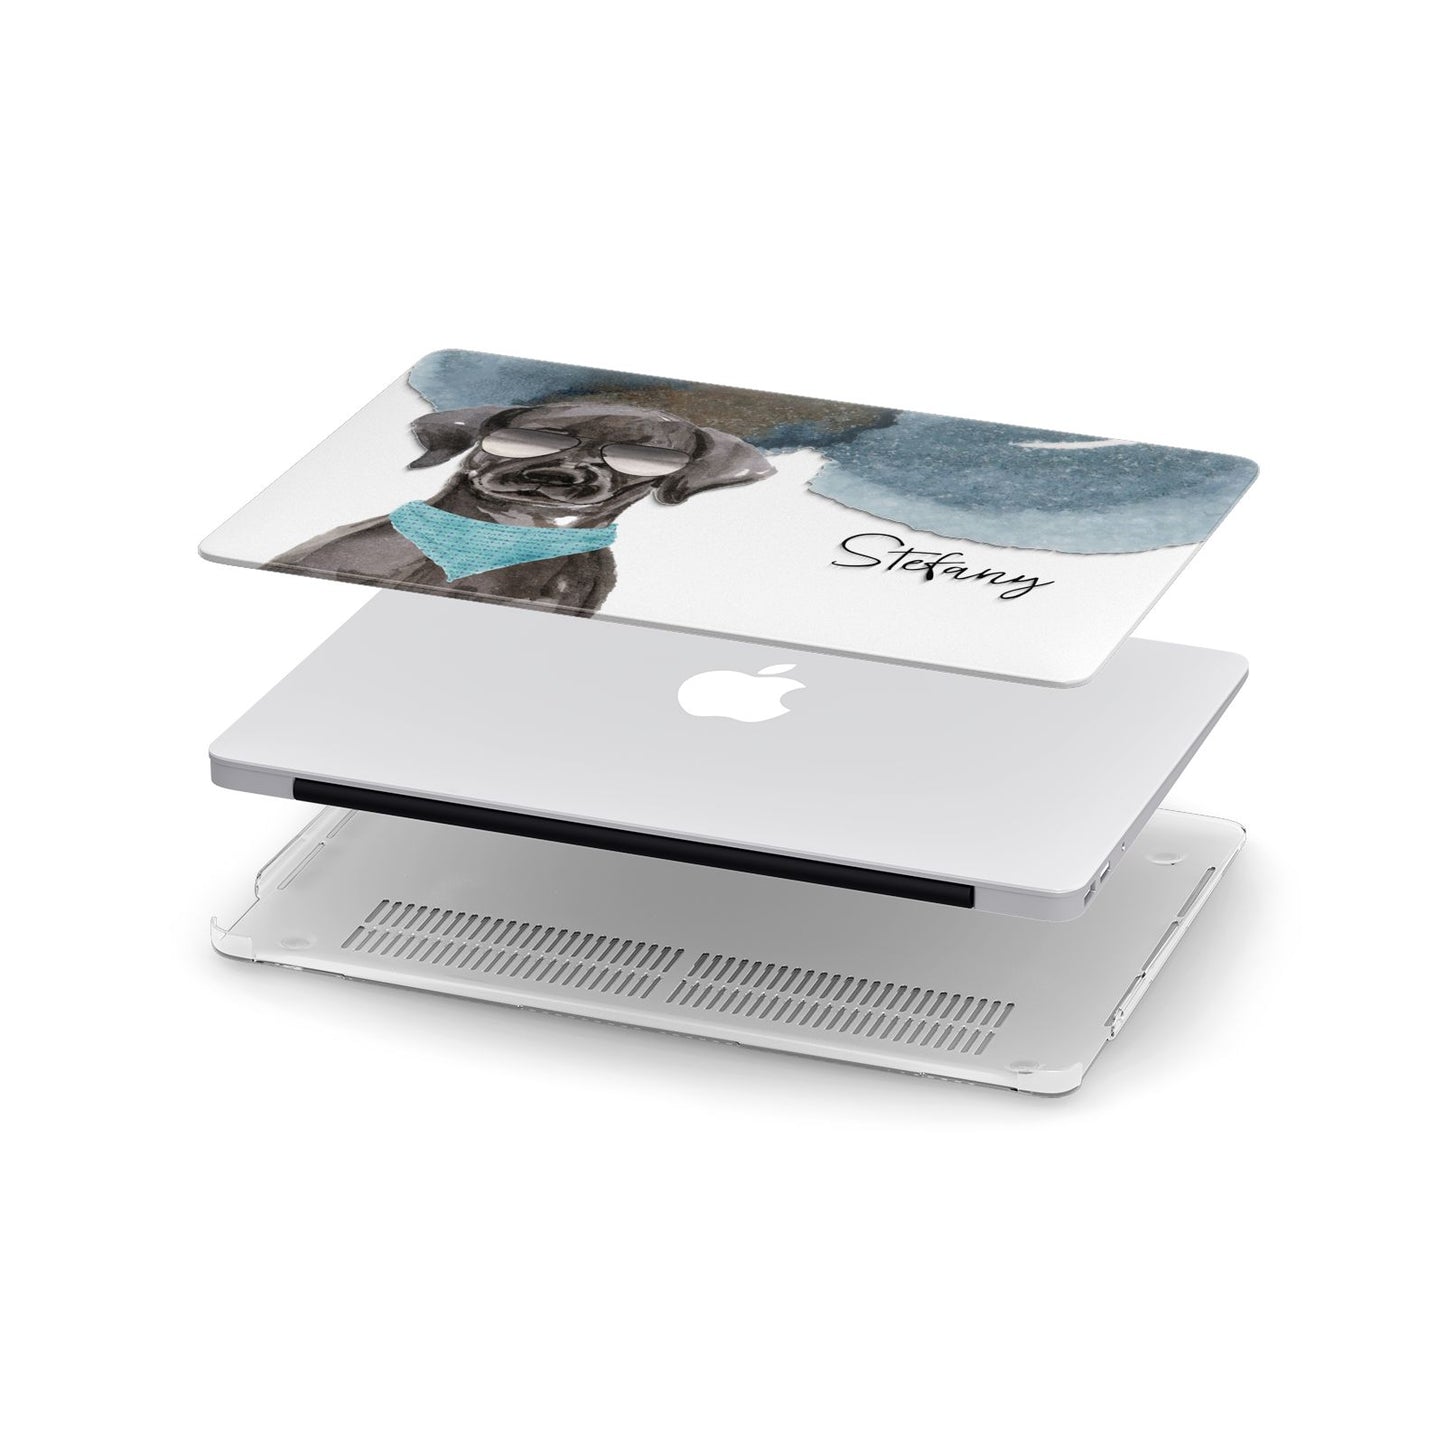 Personalised Black Labrador Apple MacBook Case in Detail